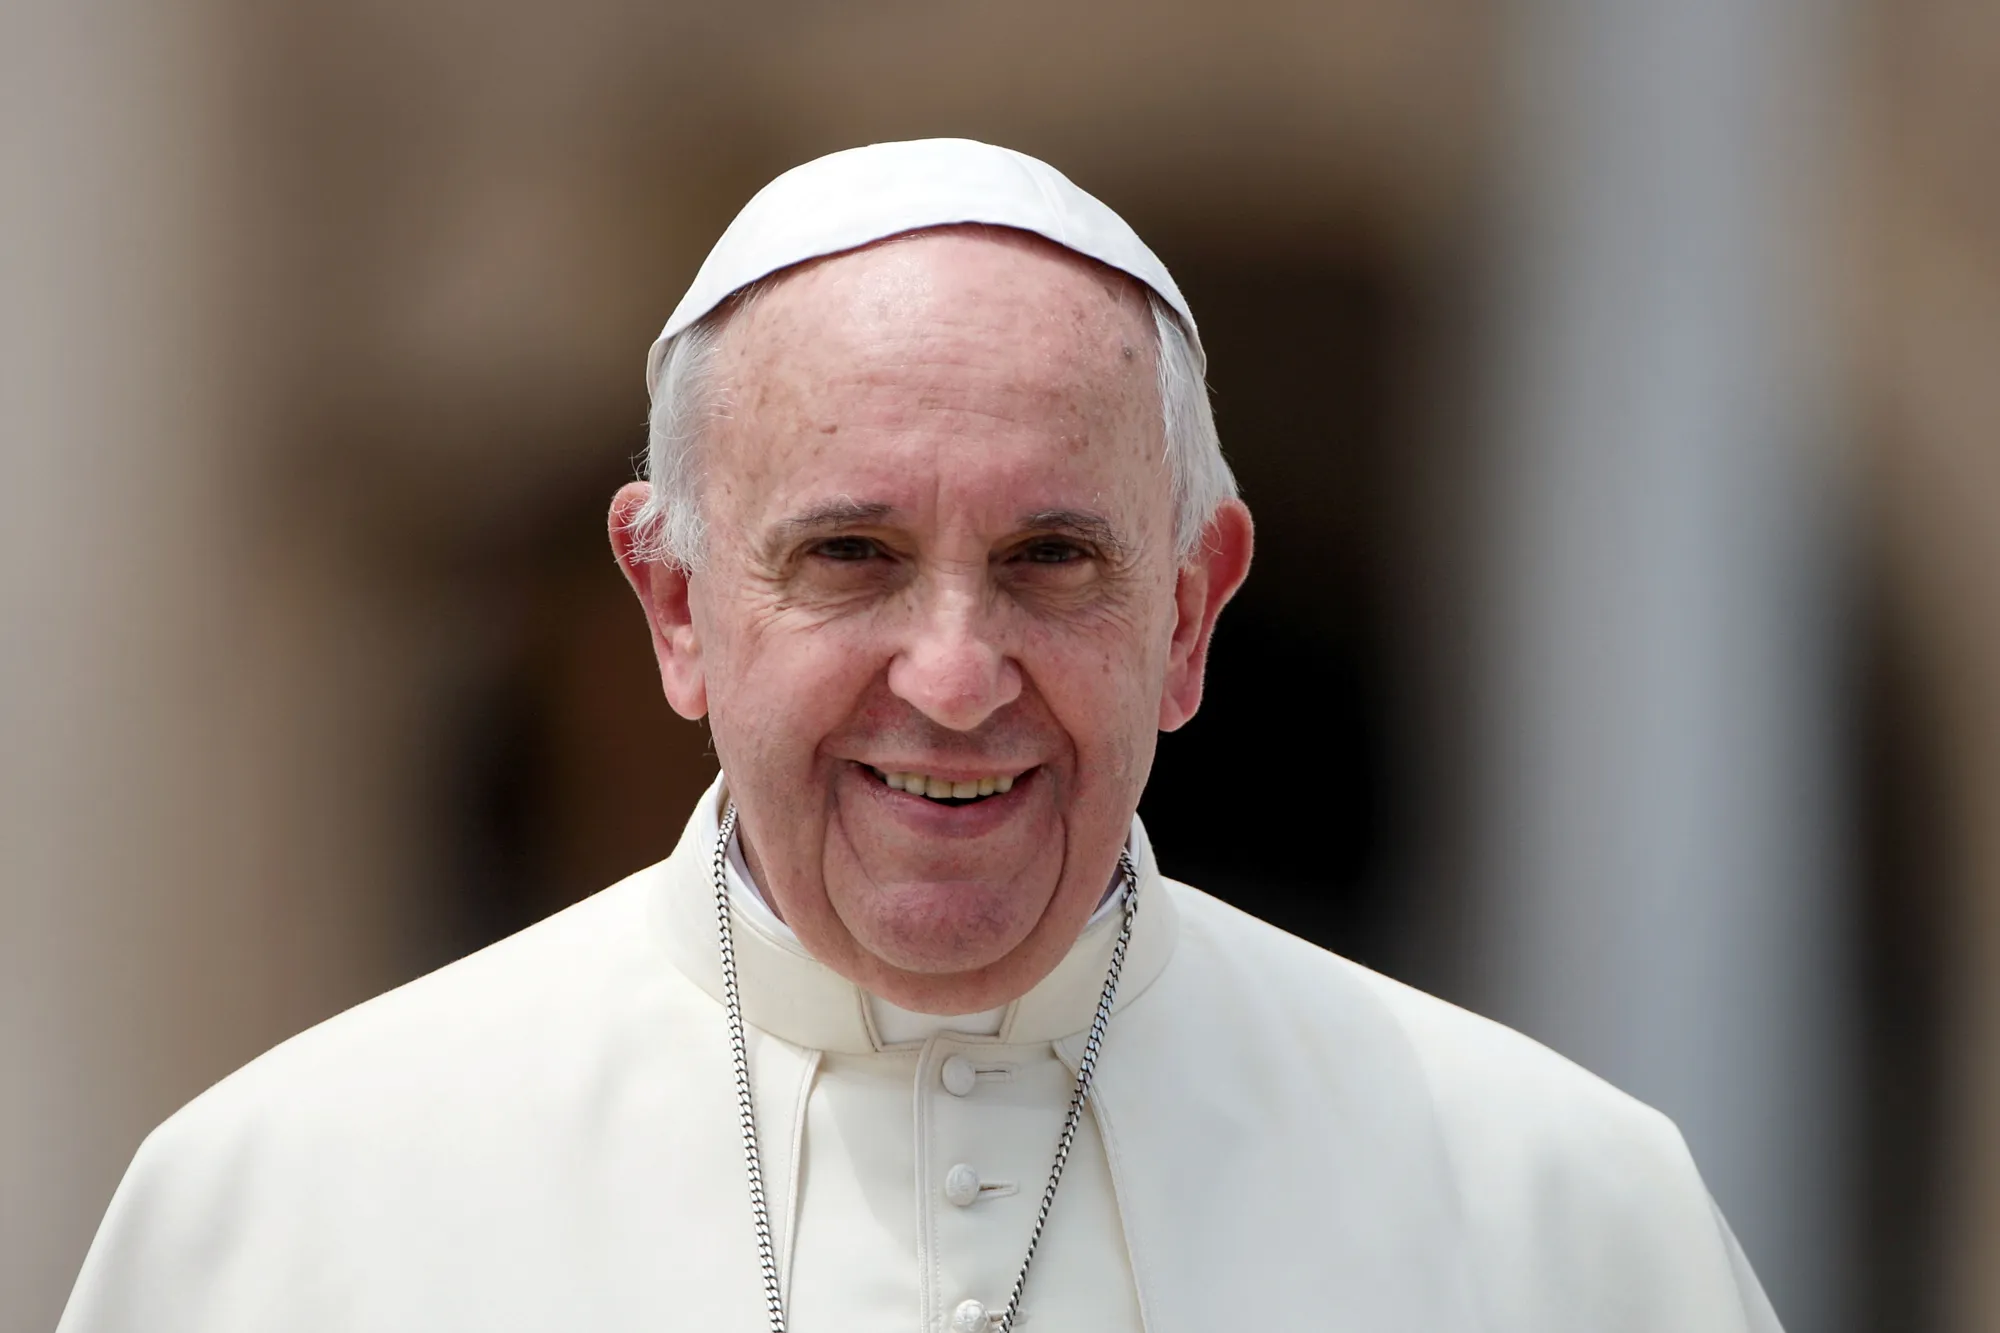 البابا فرنسيس: فلنبنِ عالماً يمكن للجميع أن يعيشوا فيه بسلام وكرامة